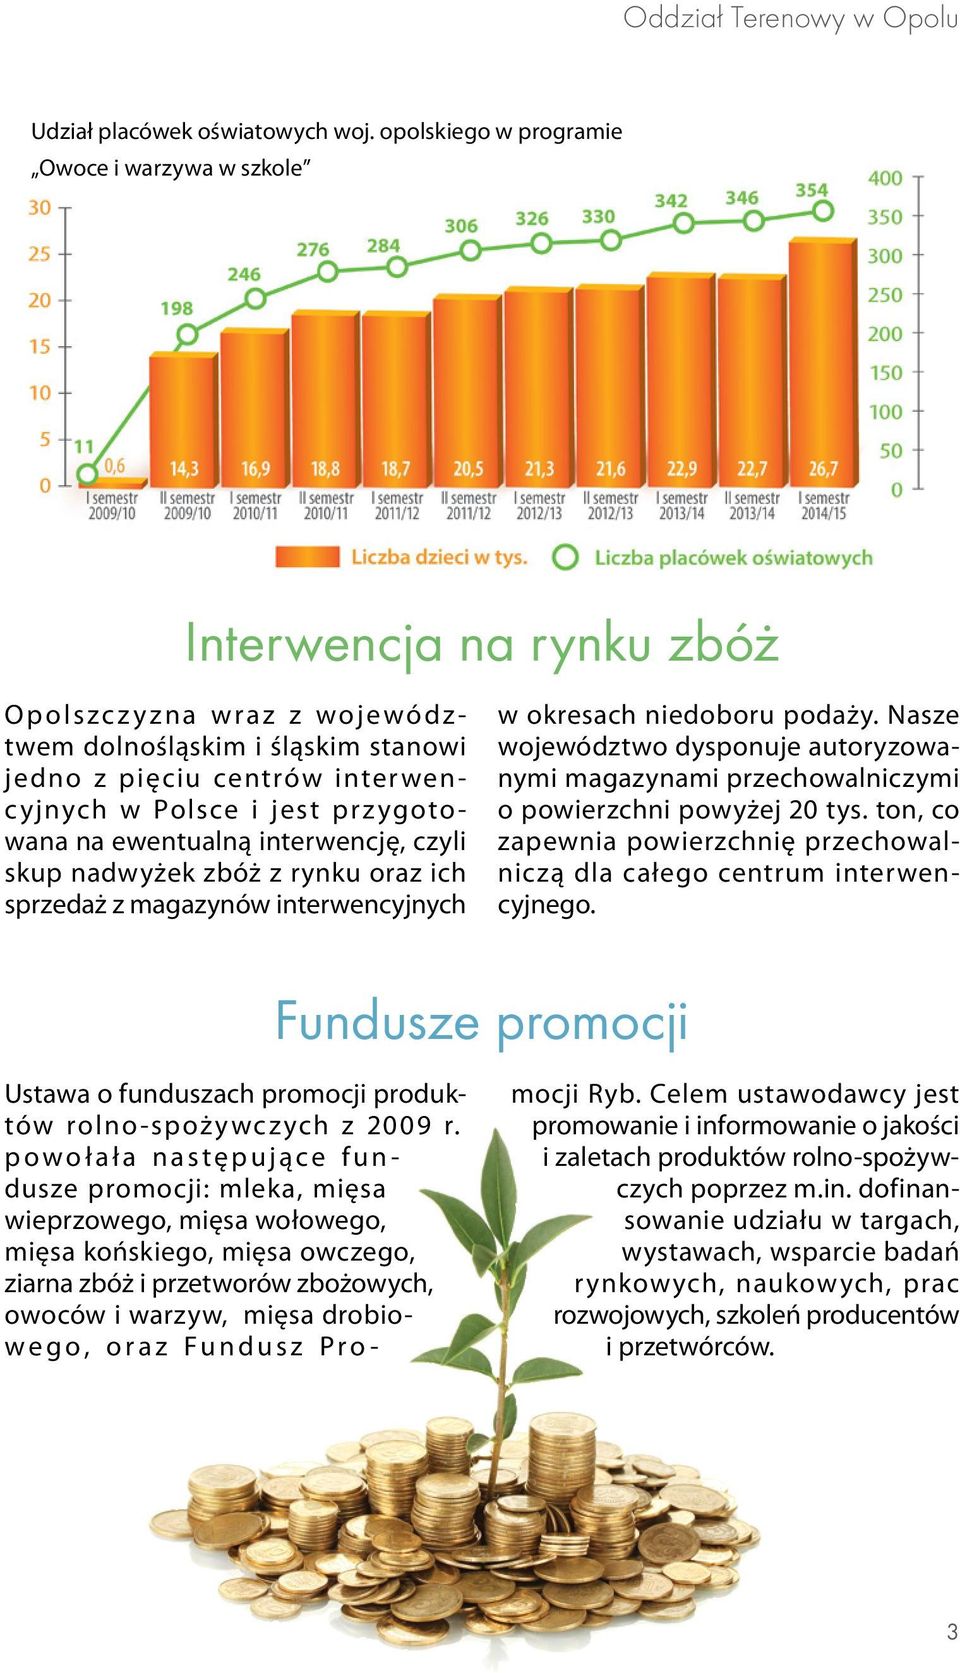 Polsce i jest prz ygoto - wana na ewentualną interwencję, czyli skup nadwyżek zbóż z rynku oraz ich sprzedaż z magazynów interwencyjnych w okresach niedoboru podaży.